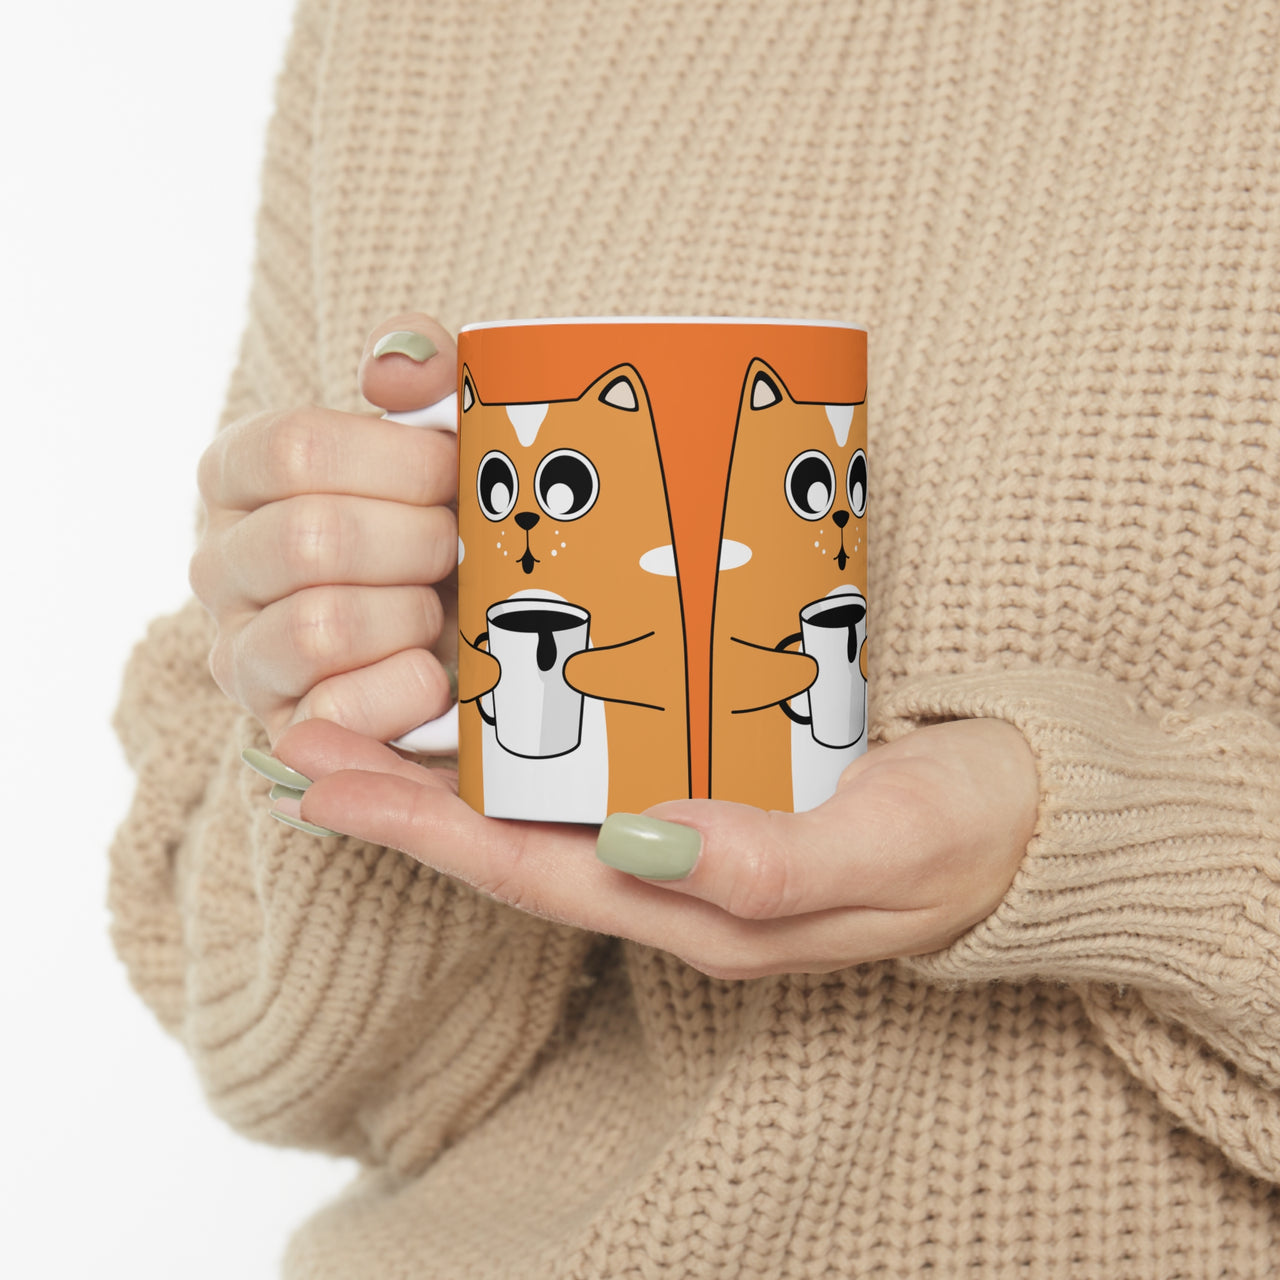 Quirky Cat and Coffee 🐱 Ceramic Mug 11oz